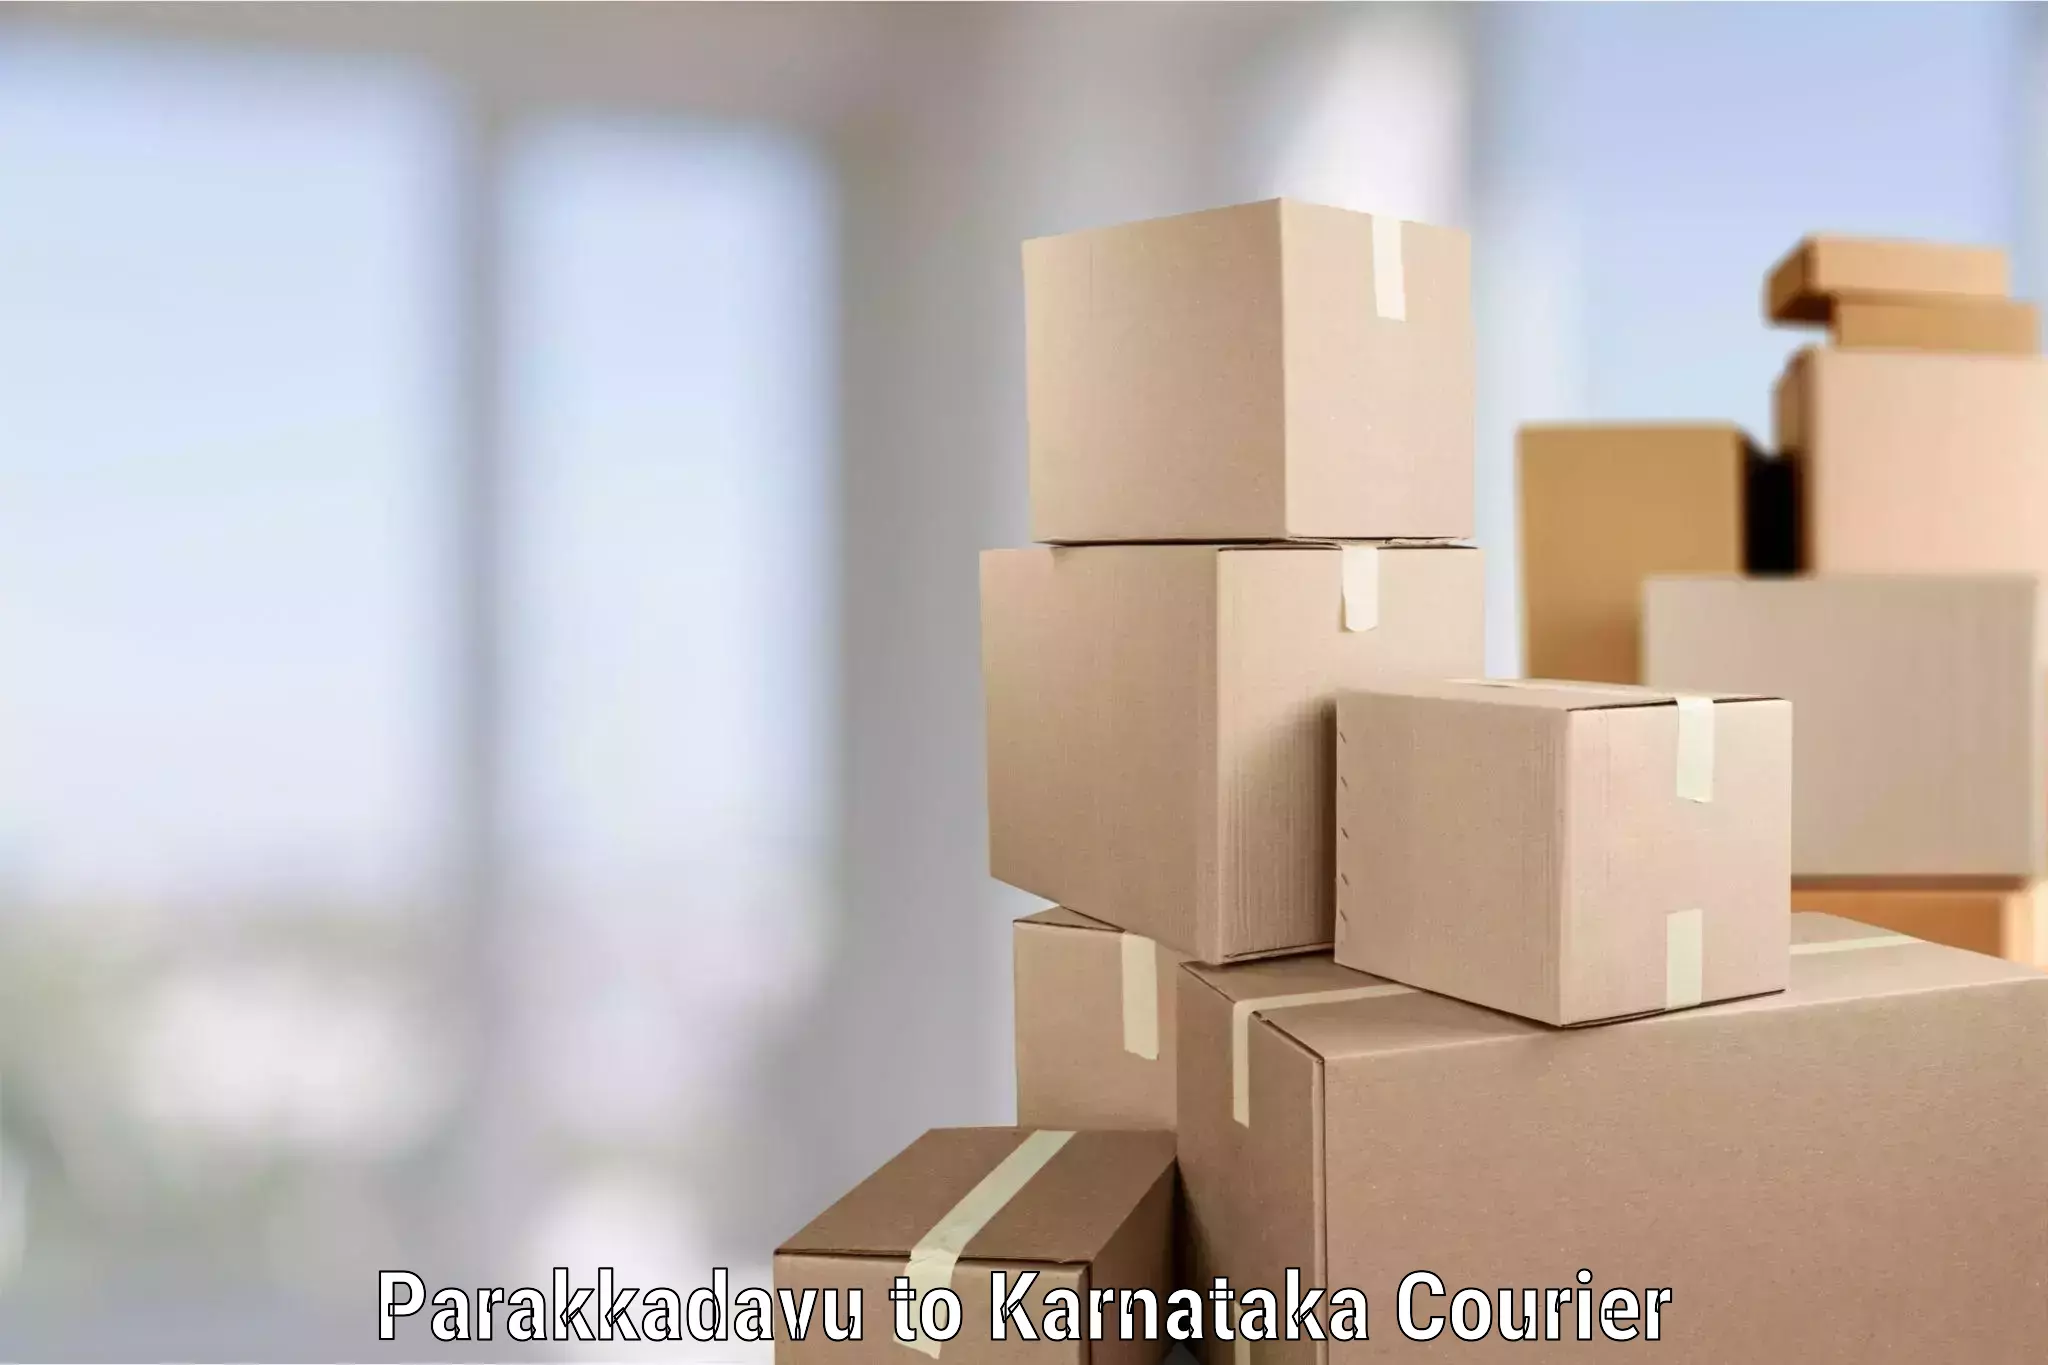 Home goods moving company Parakkadavu to Surathkal